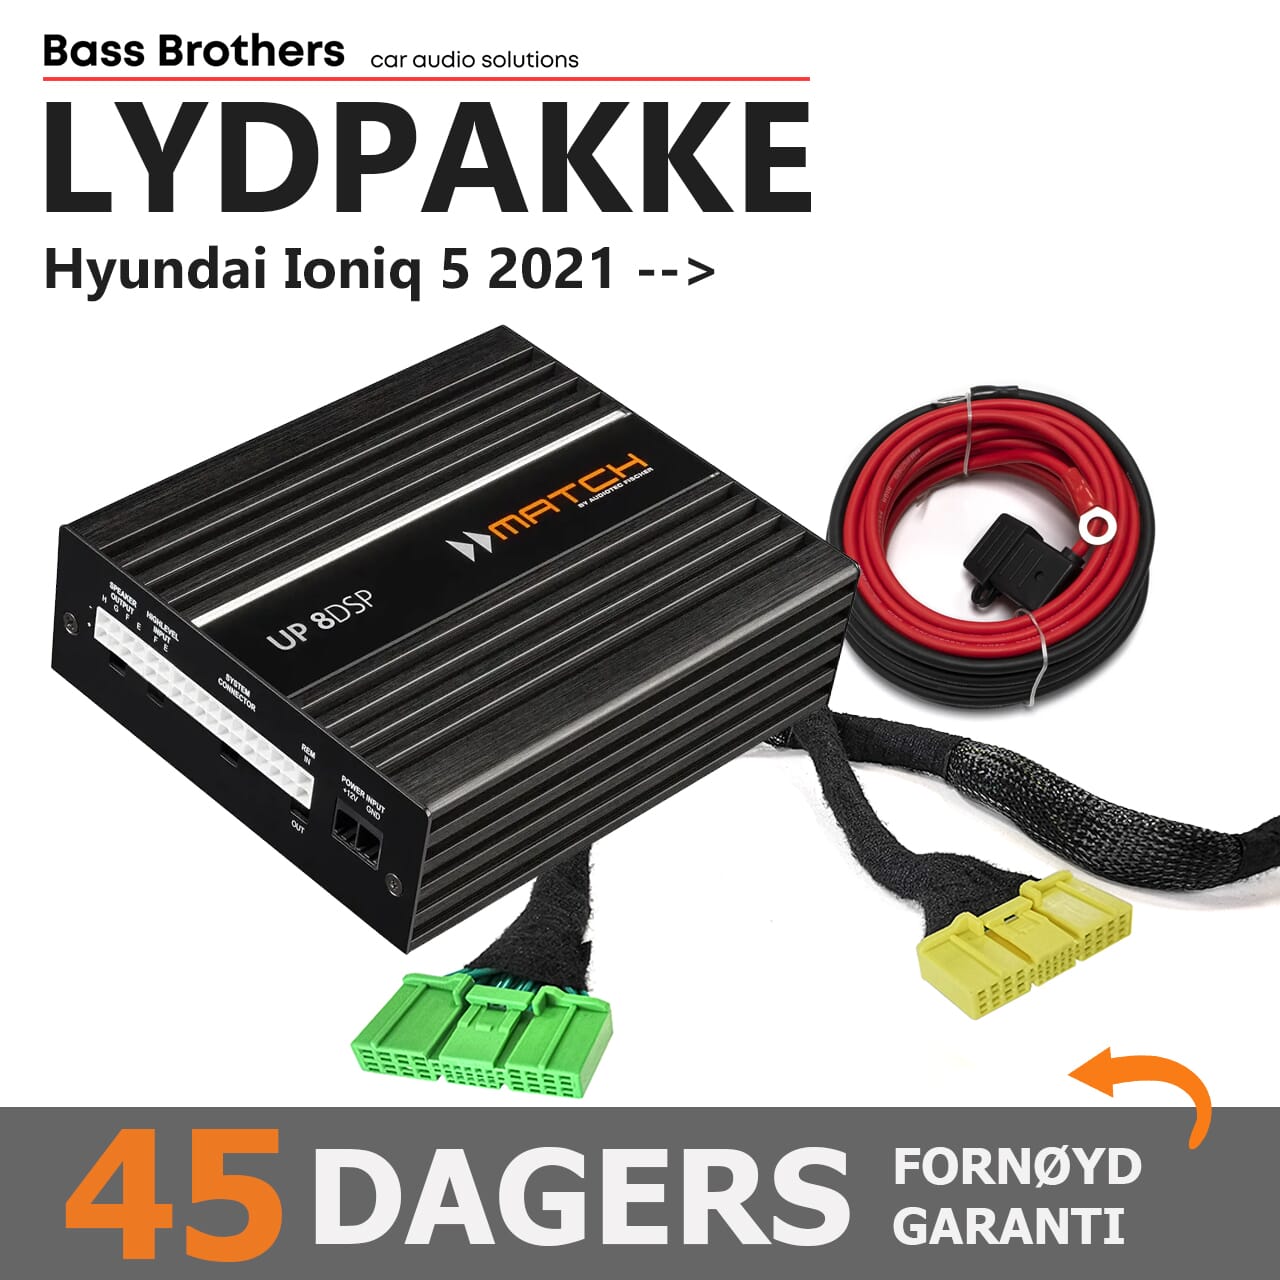 Lydoppgraderingspakke Nivå 2, for Hyundai IONIQ 5